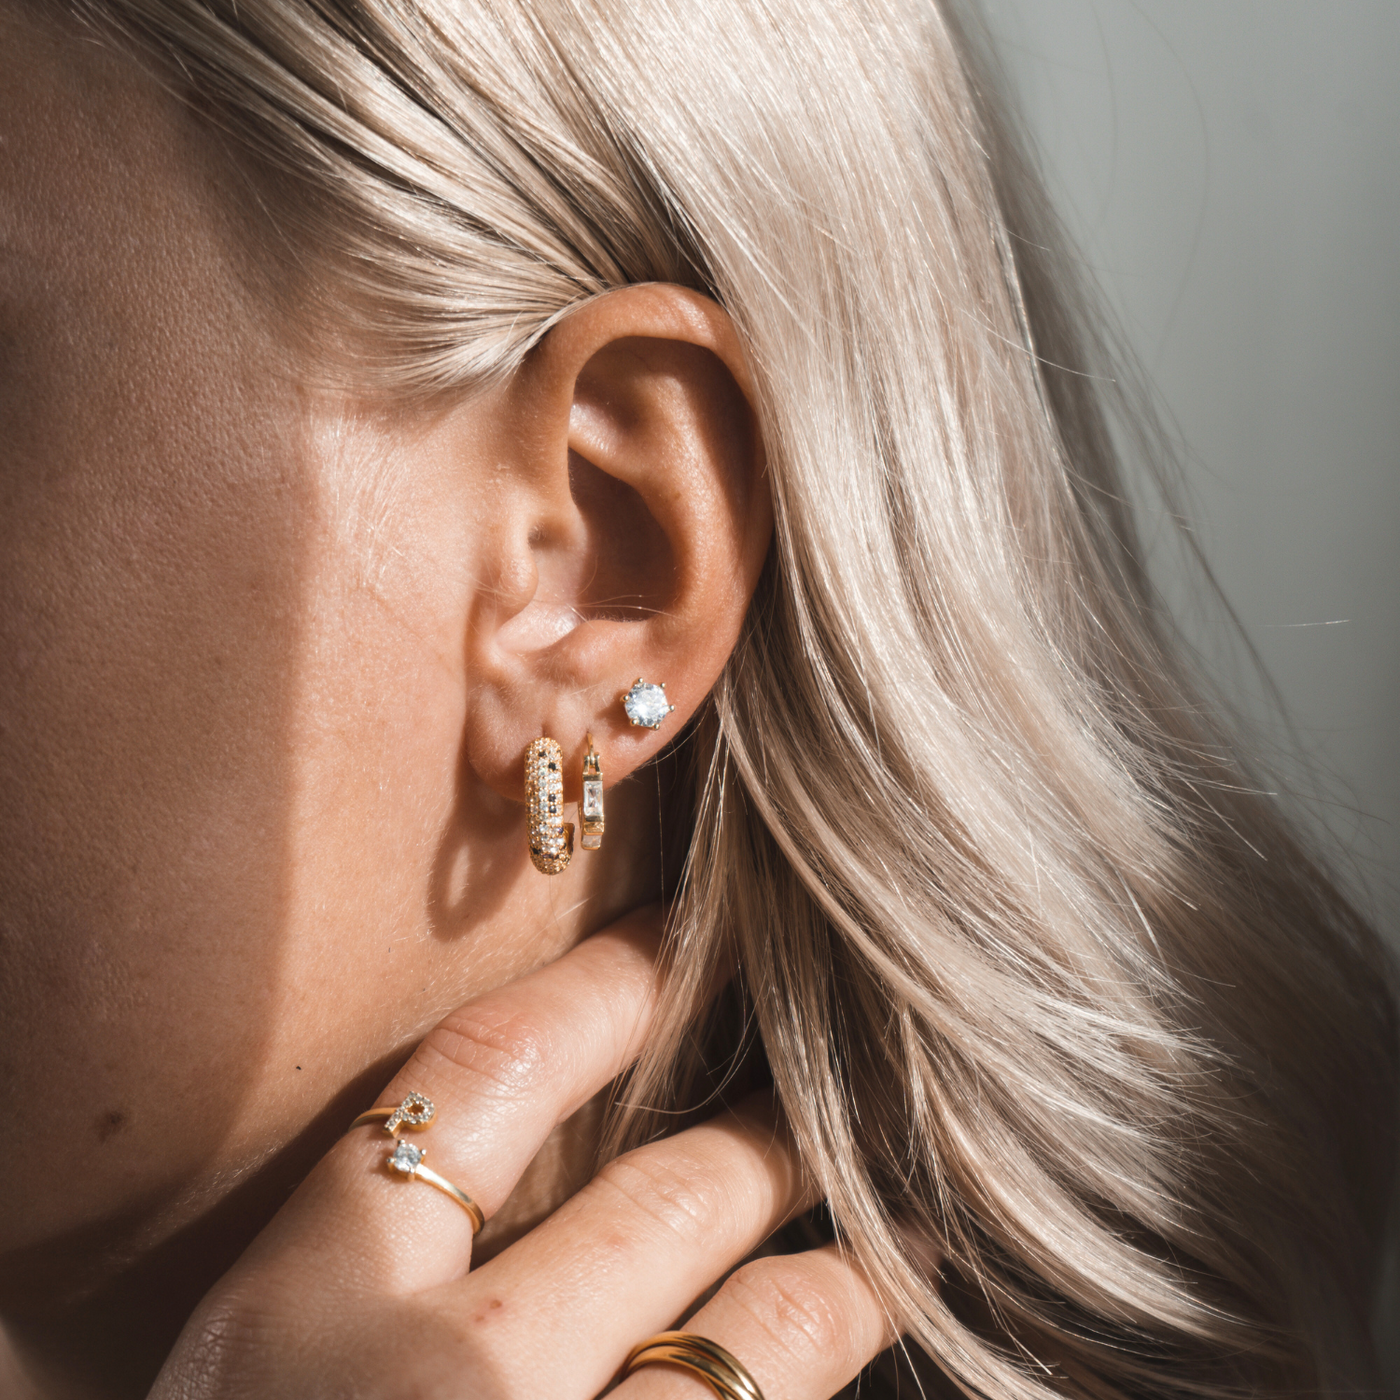 Fantasy earrings